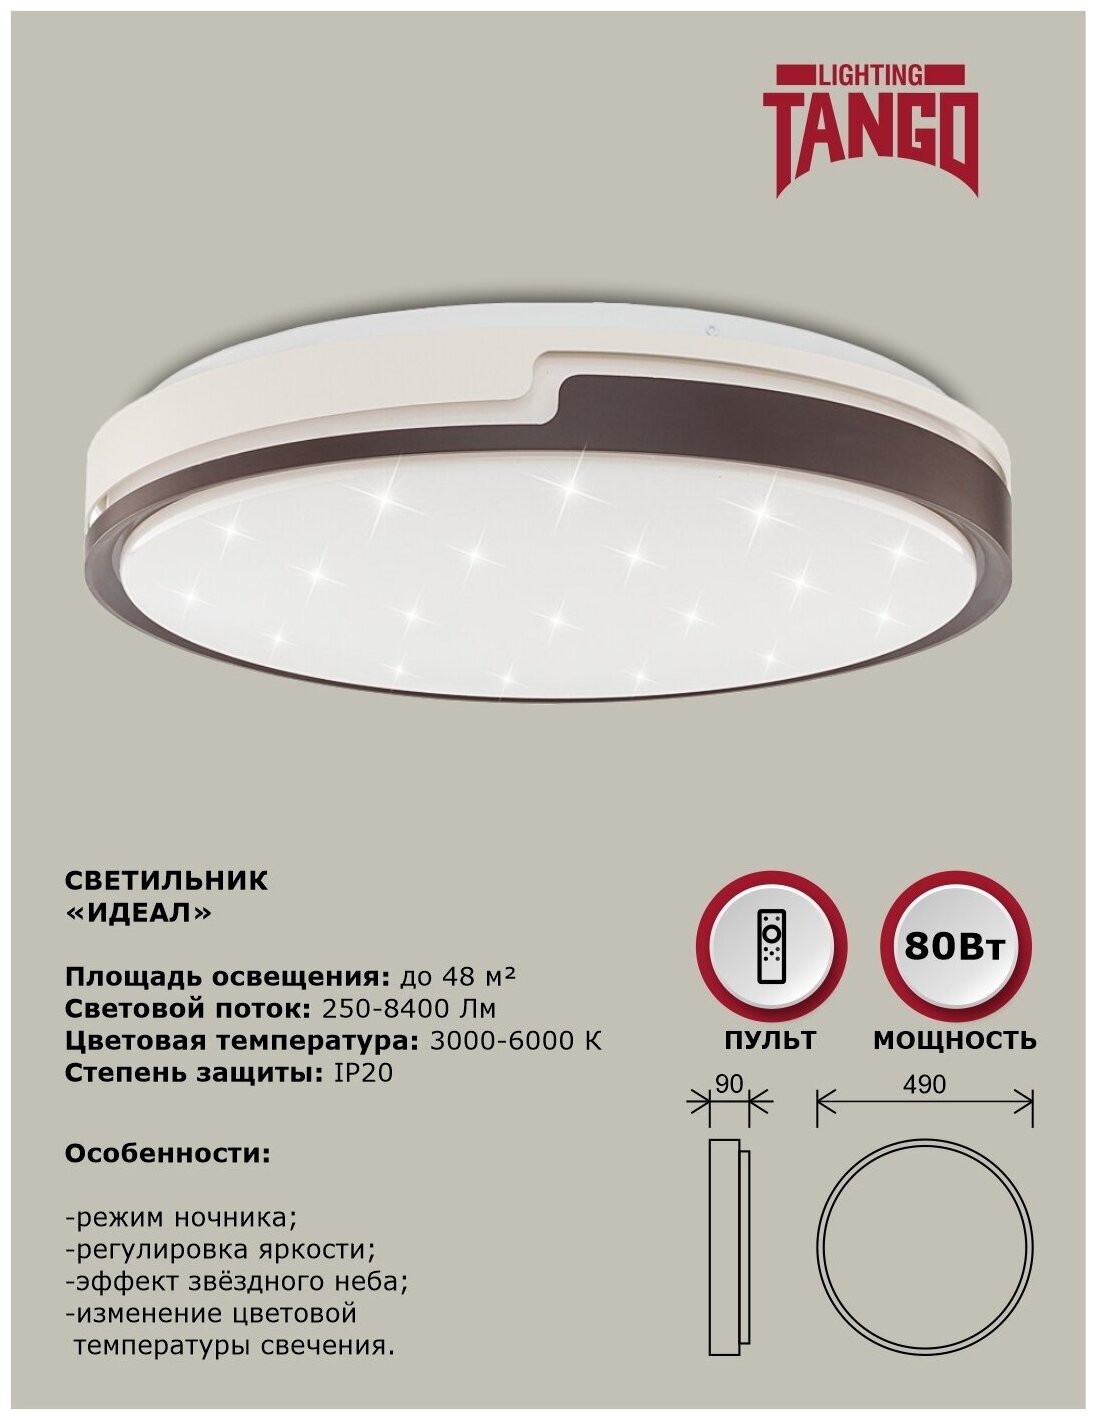 Cветильник LED настенно-потолочный "идеал" 80 Вт (490*90, основание 450мм) с ИК ДУ TANGO россия